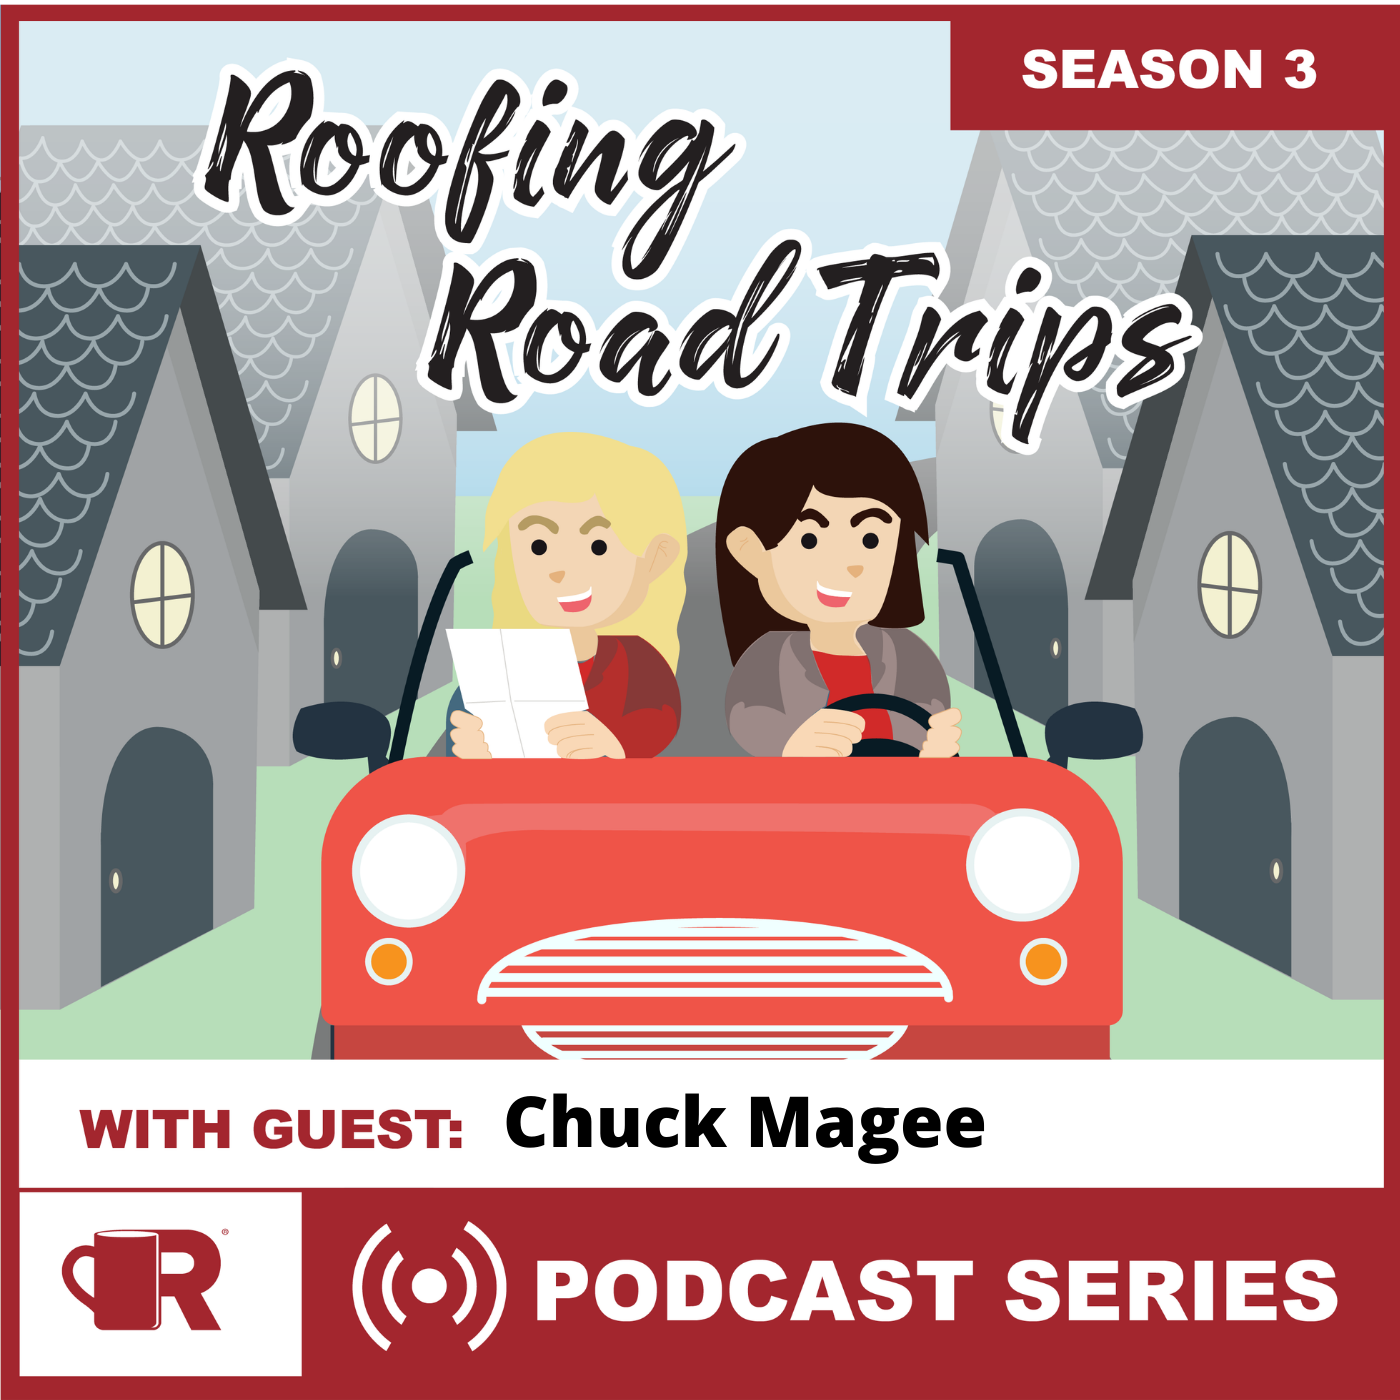 Raise The Rank - Chuck Magee Podcast